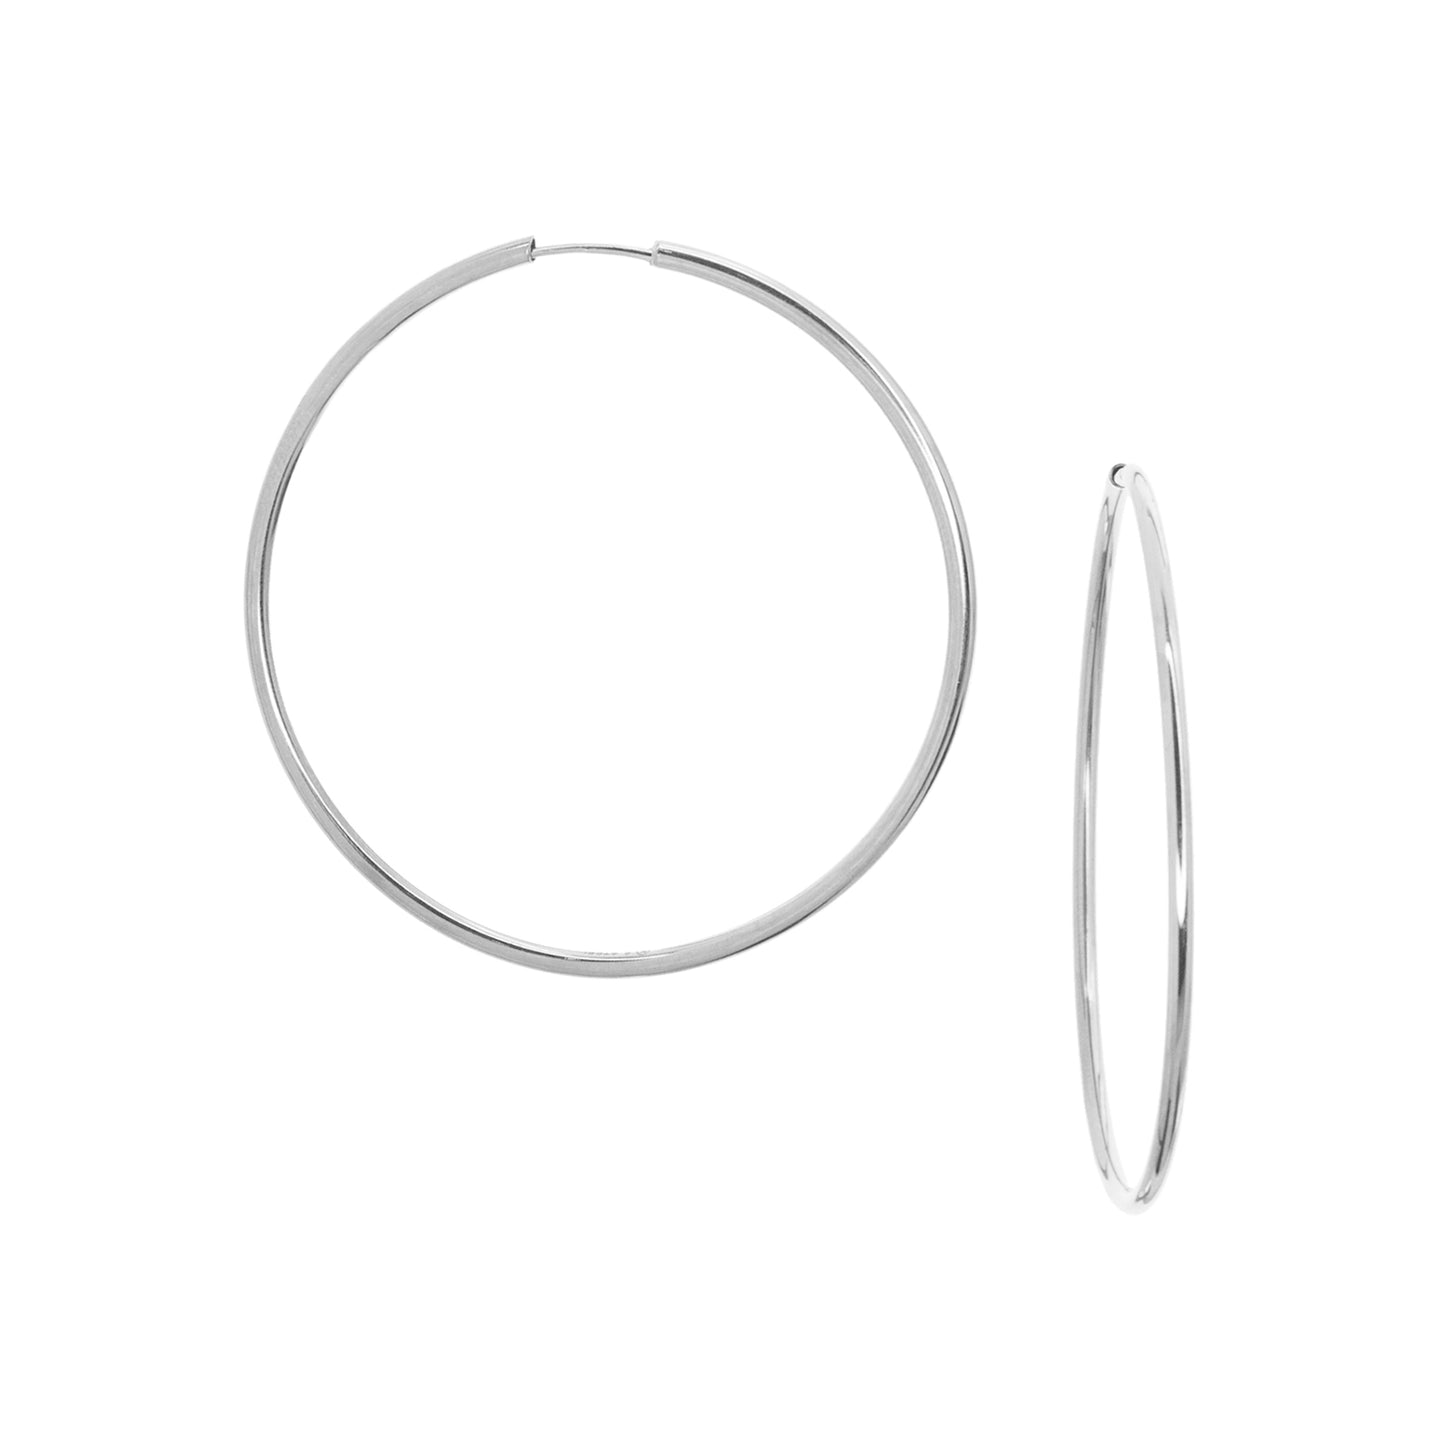 2 1/4" thin stainless steel hoop